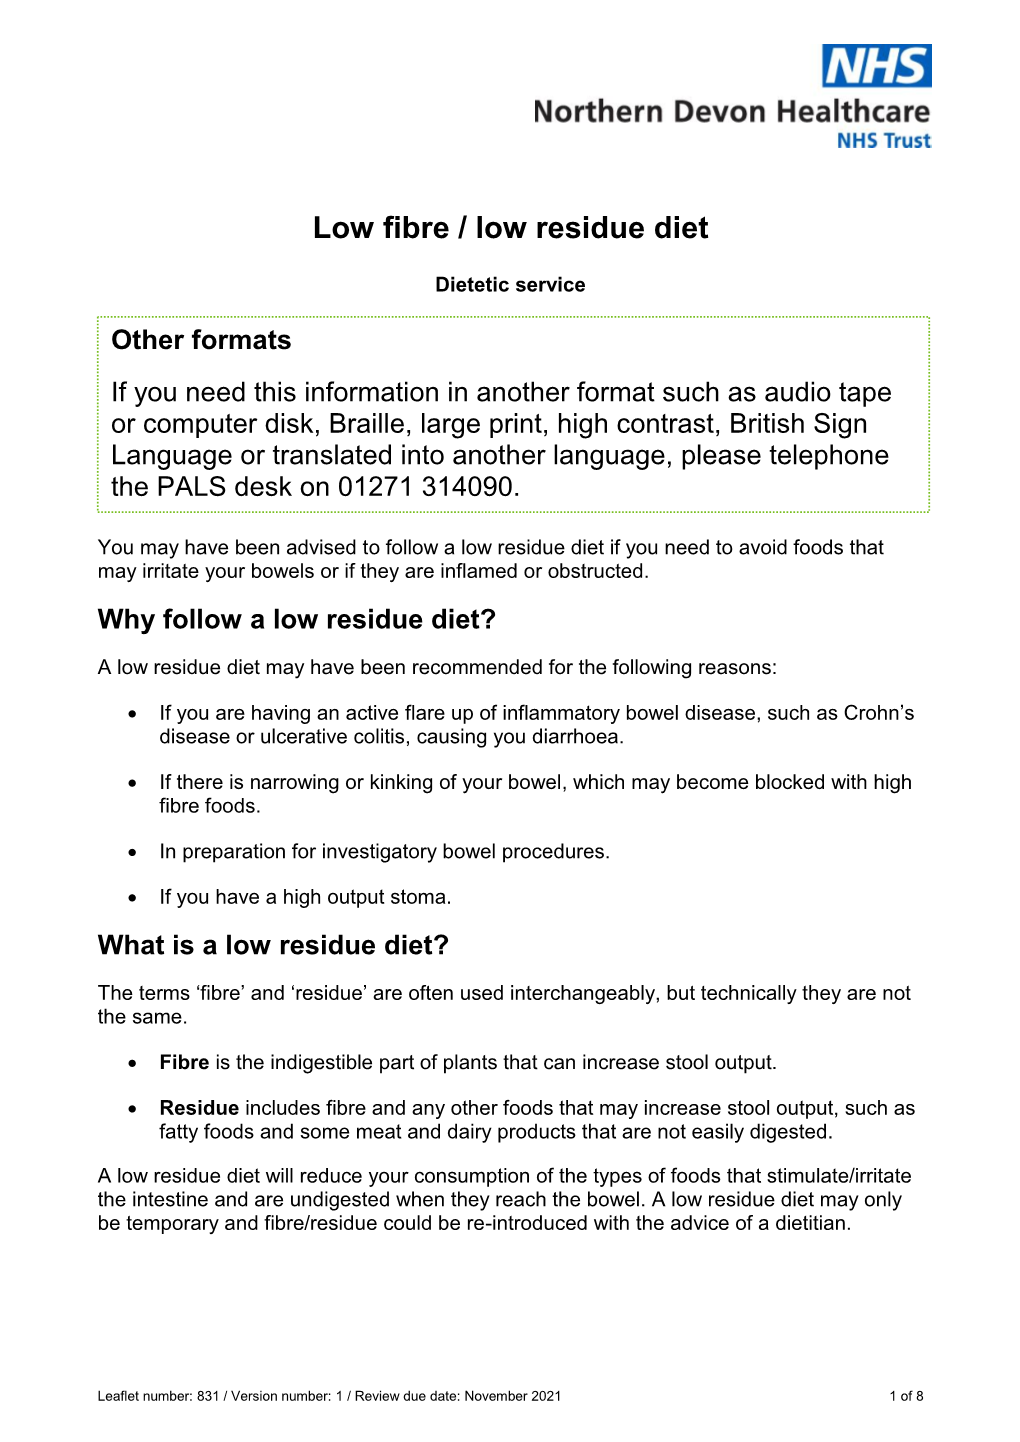 Low Fibre / Low Residue Diet